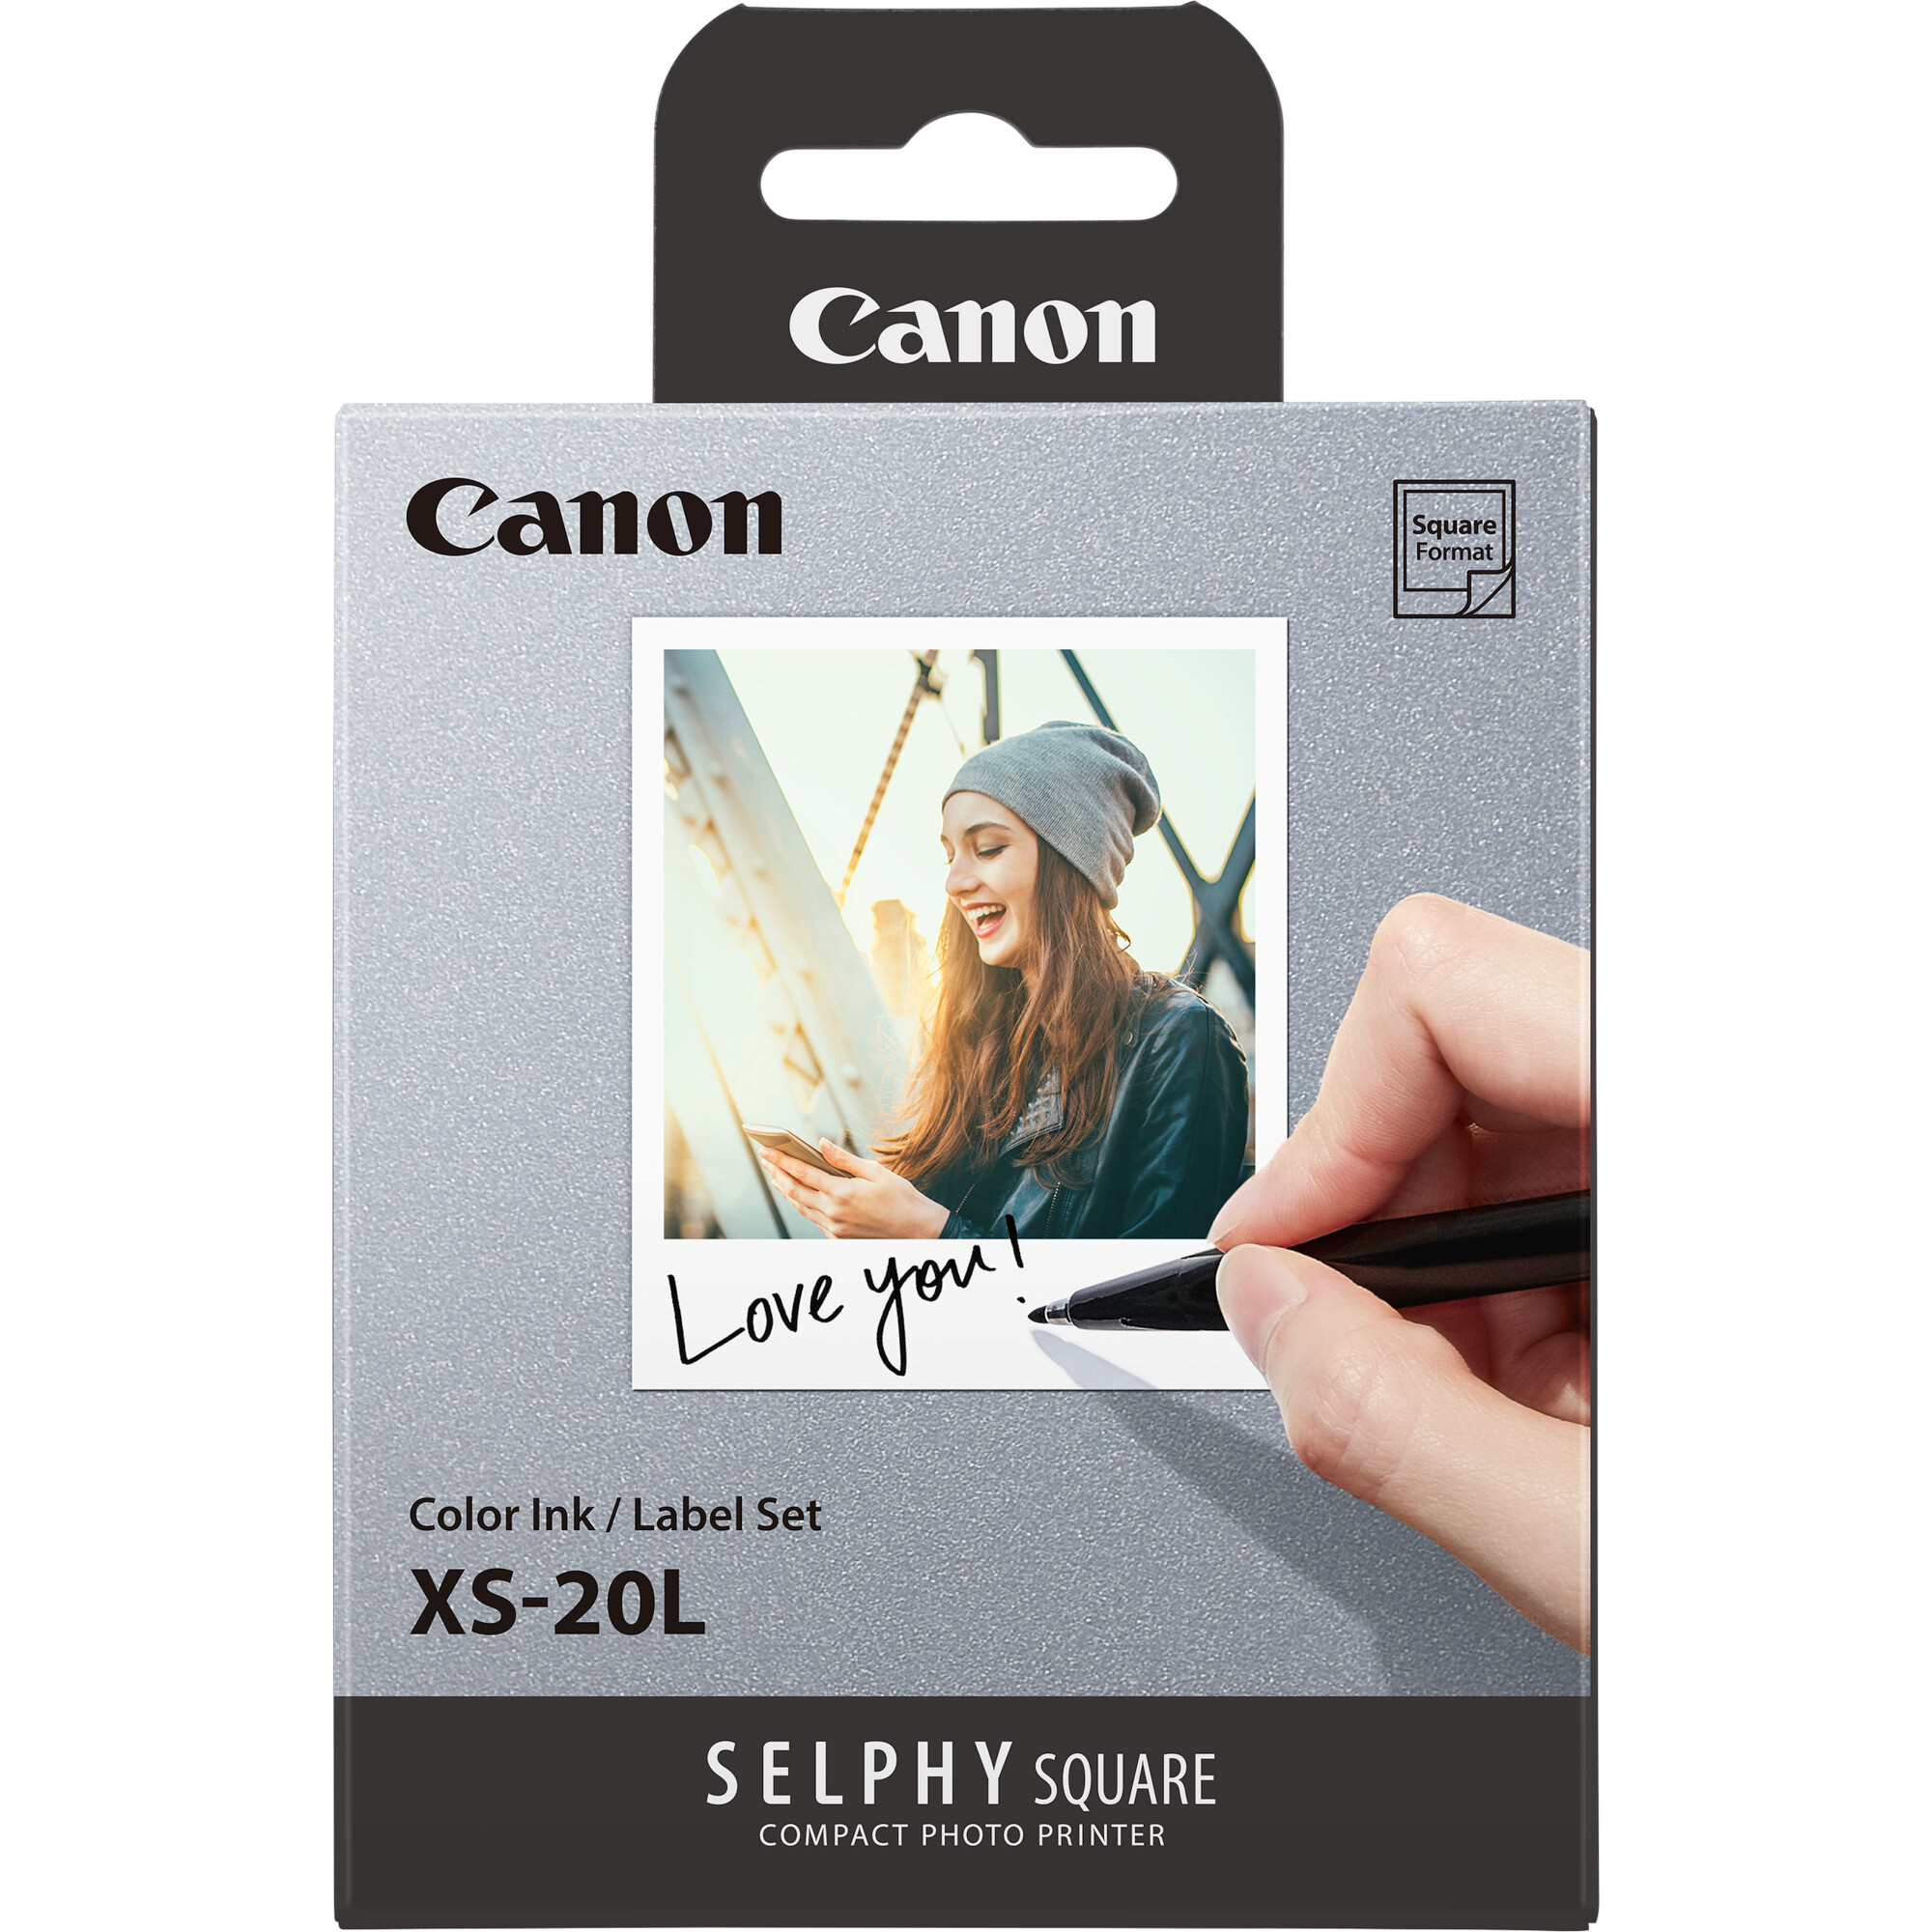 Canon XS-20L 4119C002, 20 ks, samolepiaci fotopapier + atramentová fólia, termosublimačný, biely